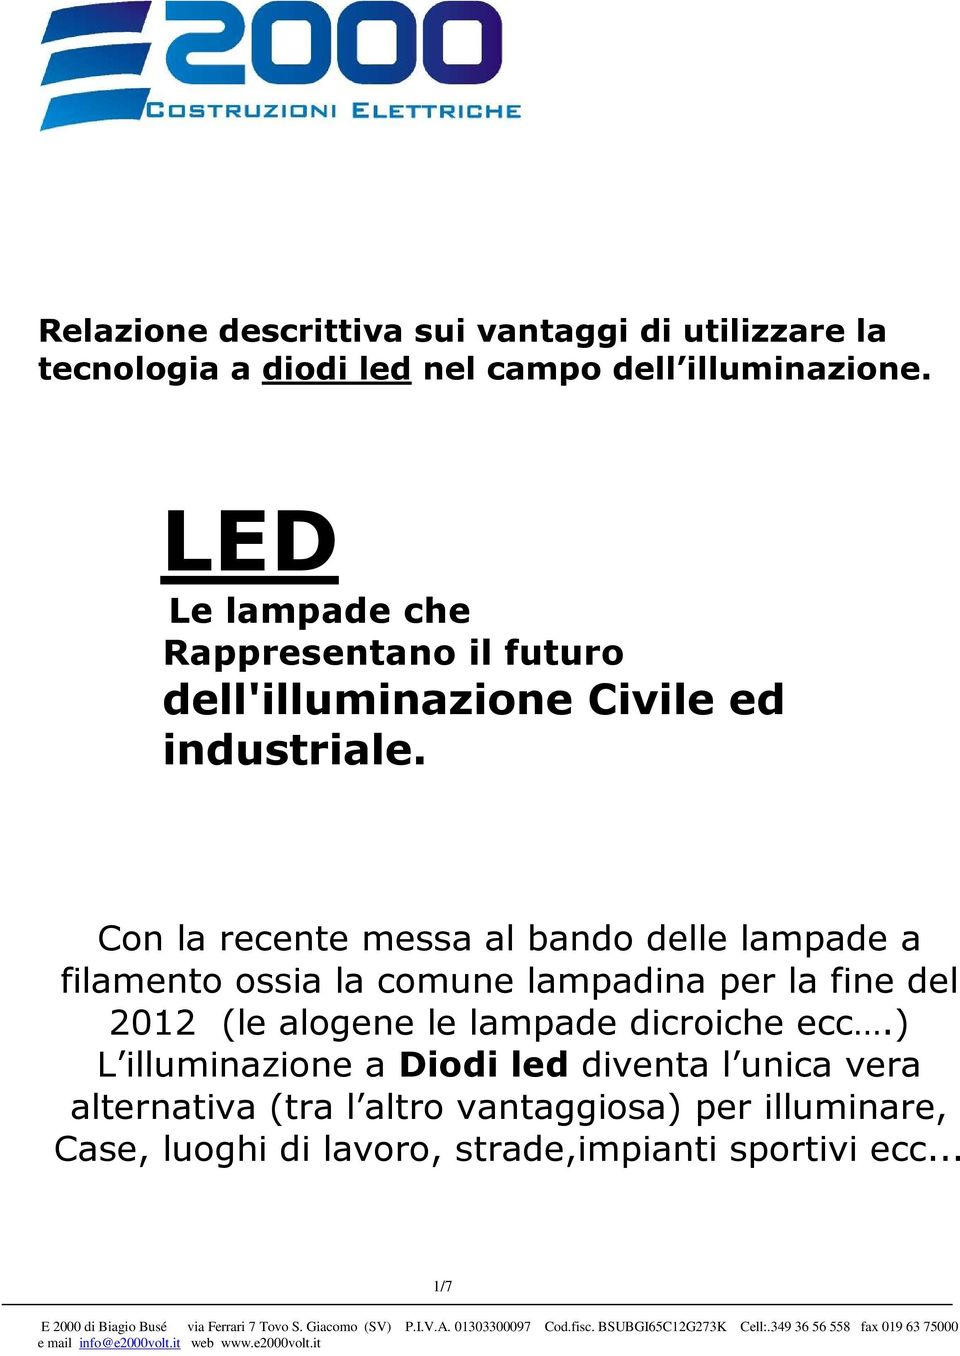 Con la recente messa al bando delle lampade a filamento ossia la comune lampadina per la fine del 2012 (le alogene le